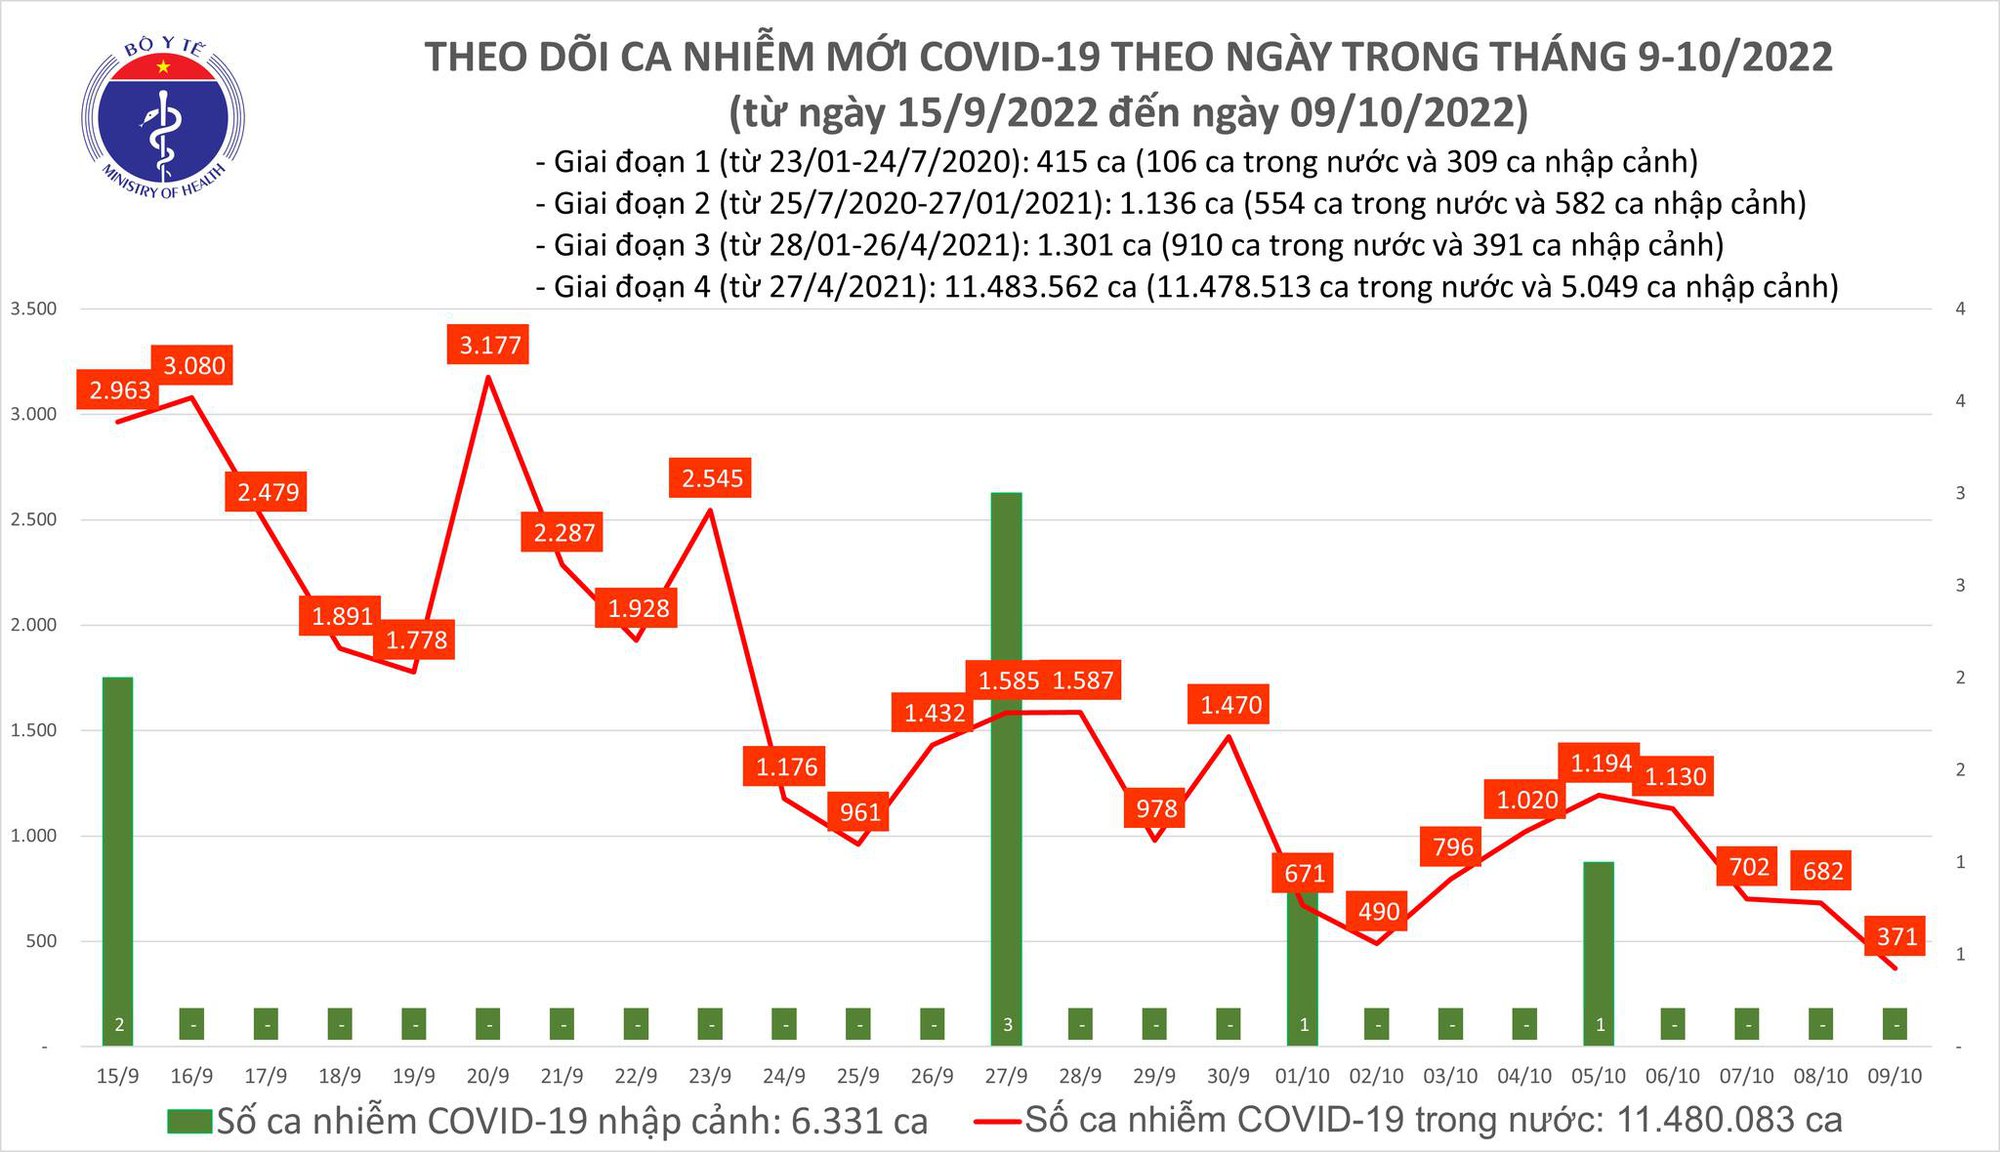 Ngày 9/10: Ca COVID-19 giảm mạnh còn 371, thấp nhất gần 5 tháng qua